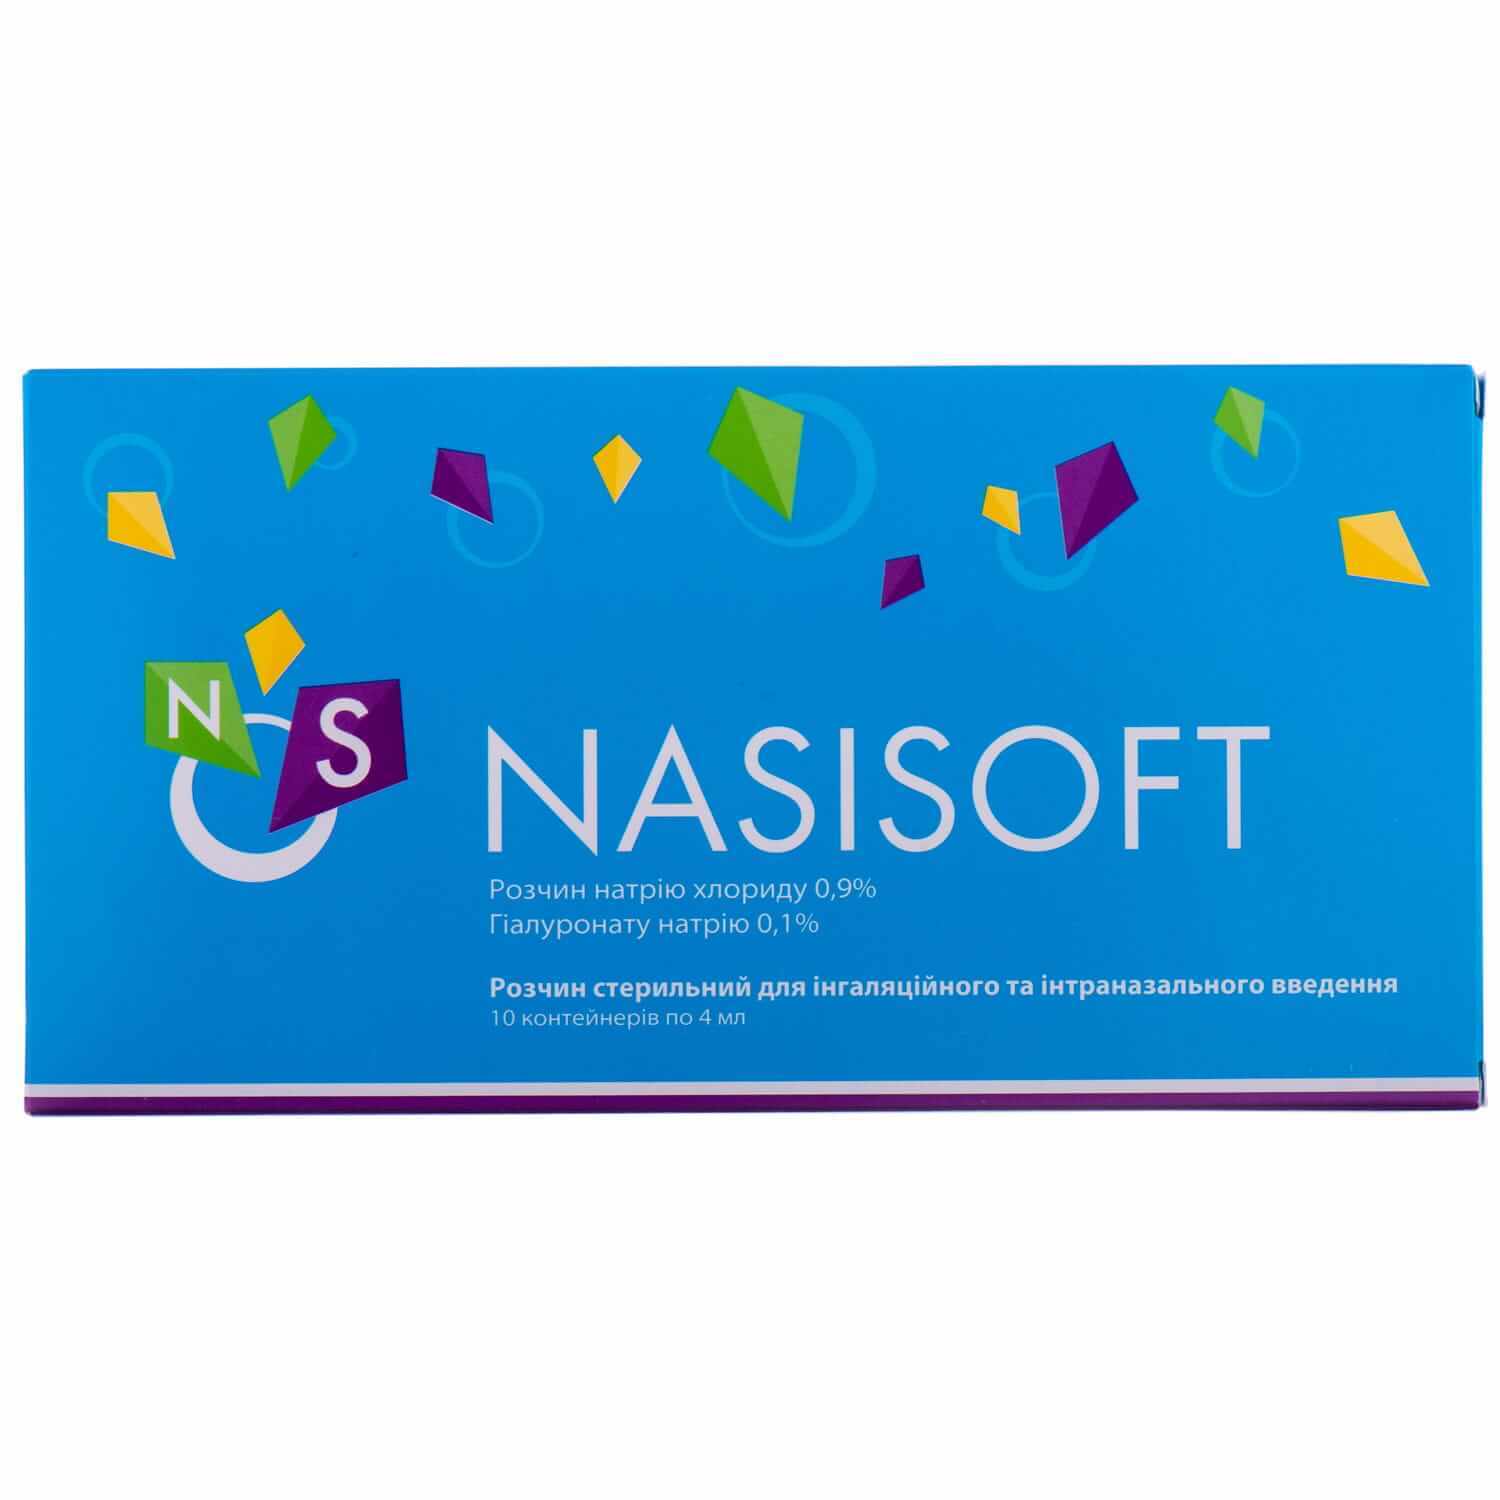 

Nasisoft розчин стерильний для інгаляційного та інтраназального введення 4 мл, № 10, р-н стерил. контейнер полімер. 4 мл